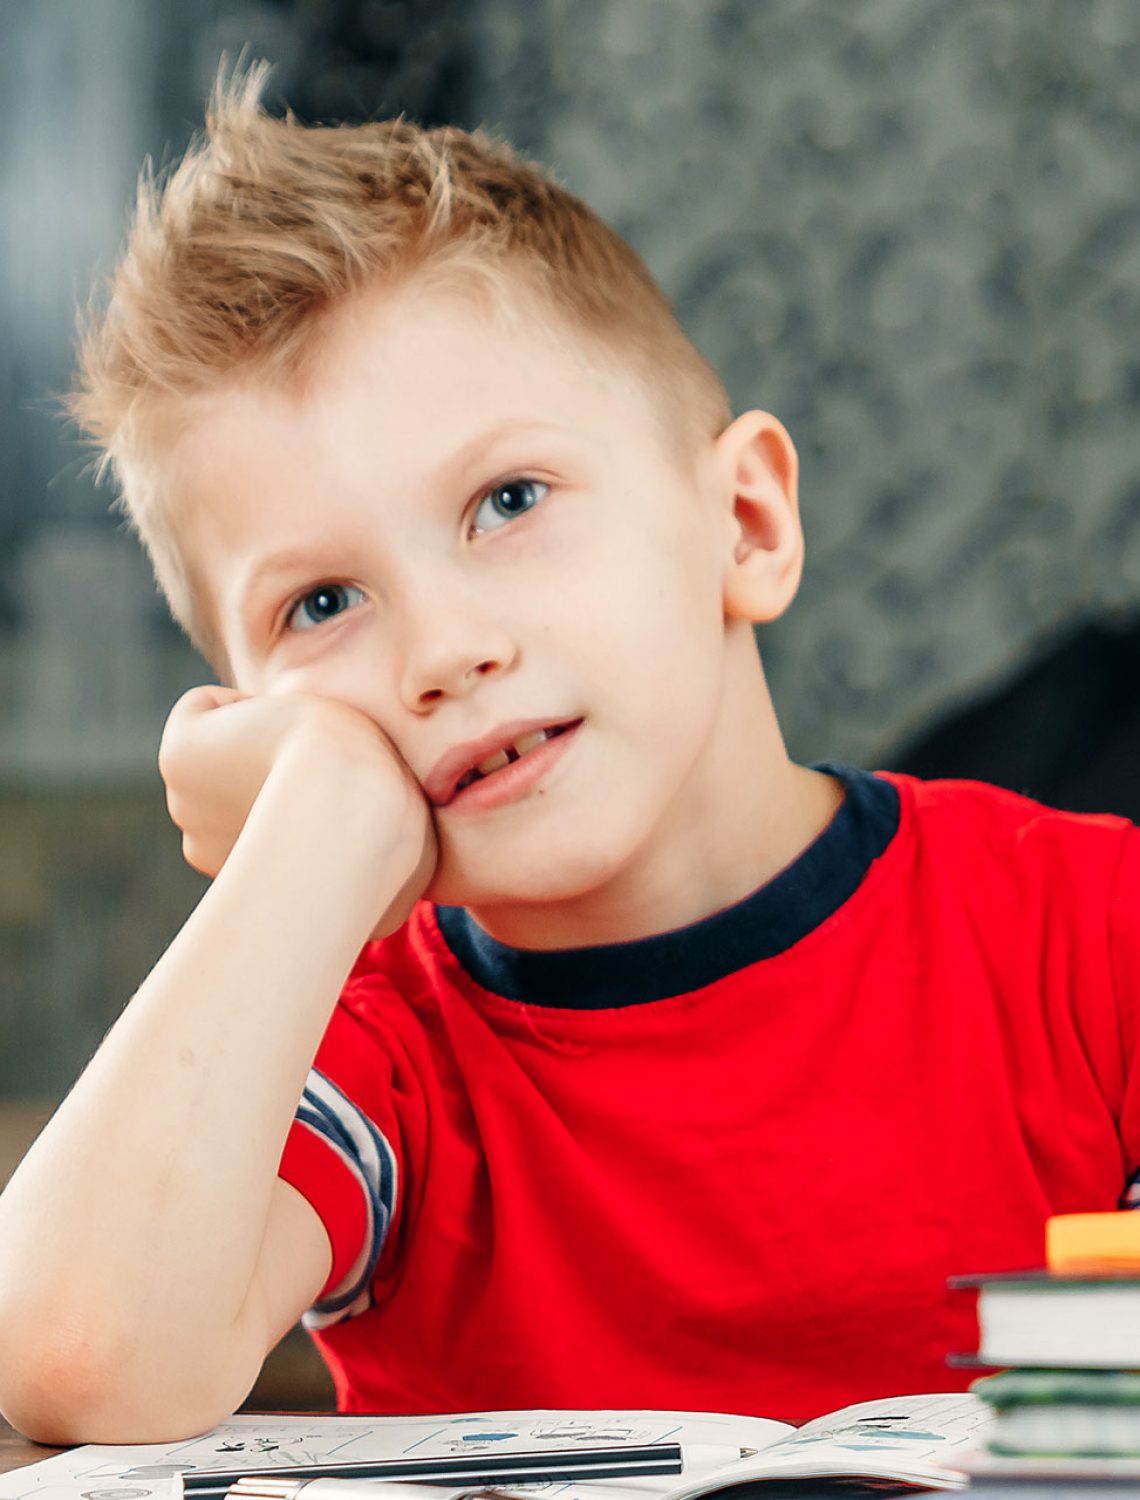 שכיחות תופעת הפרעת הקשב והריכוז גבוהה פי 3 אצל בנים - הפרעות קשב וריכוז אצל ילדים